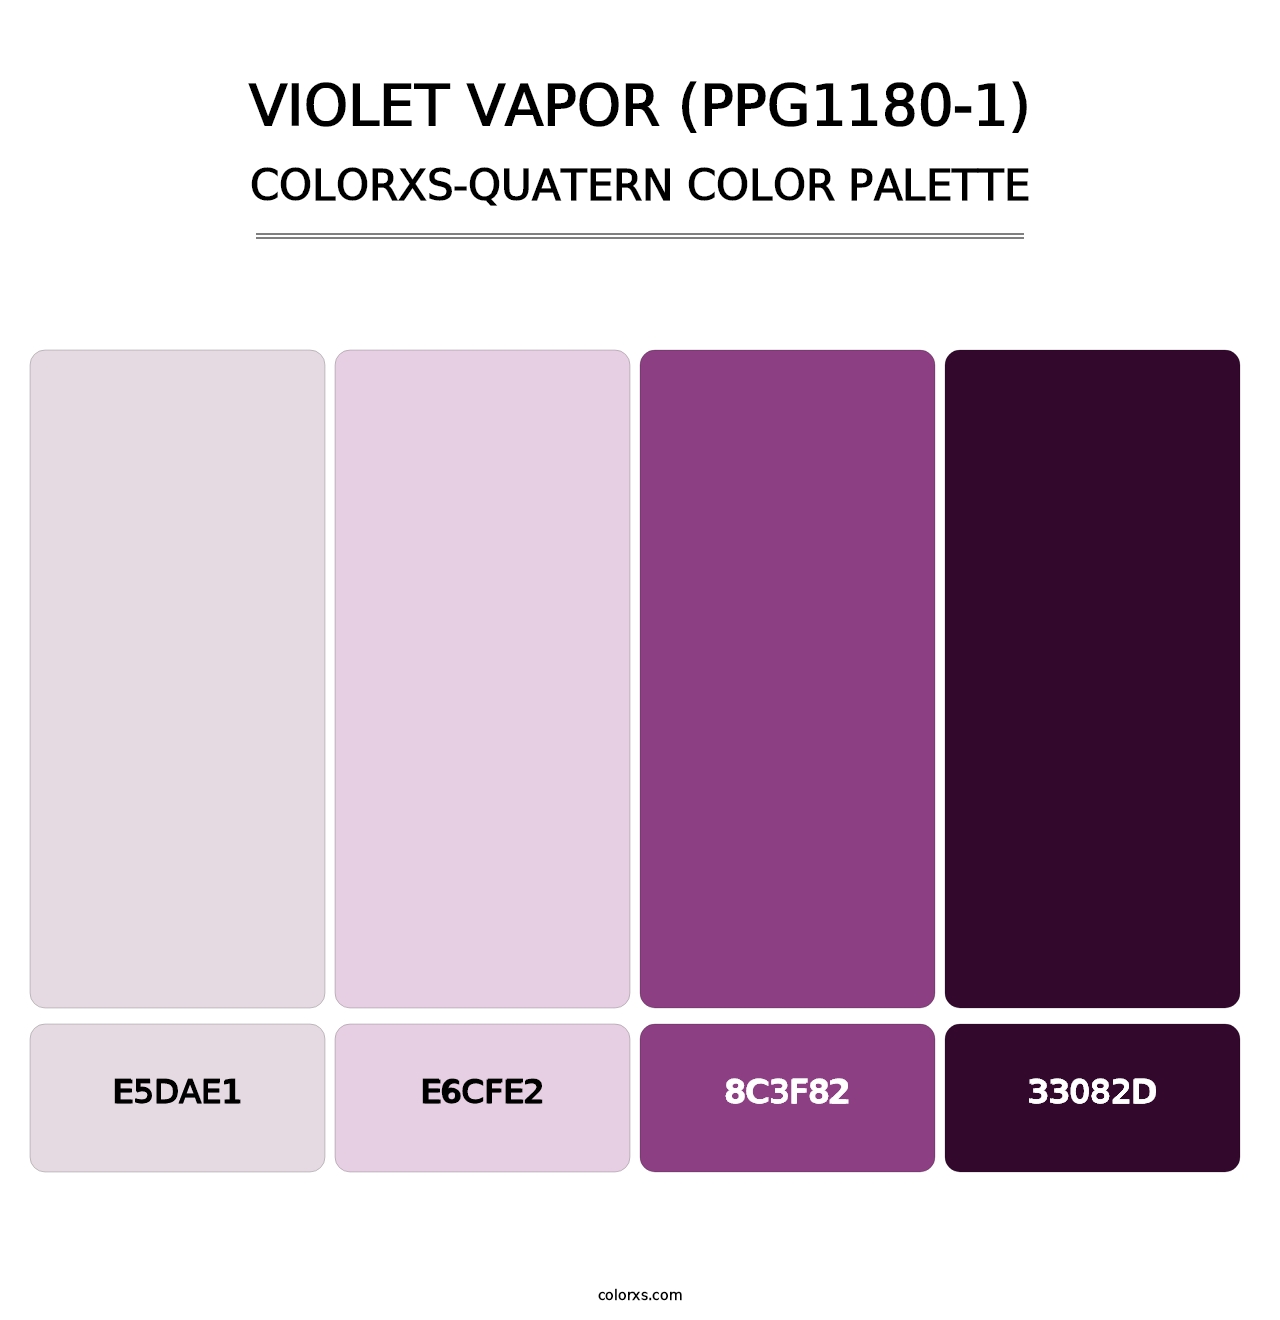 Violet Vapor (PPG1180-1) - Colorxs Quatern Palette